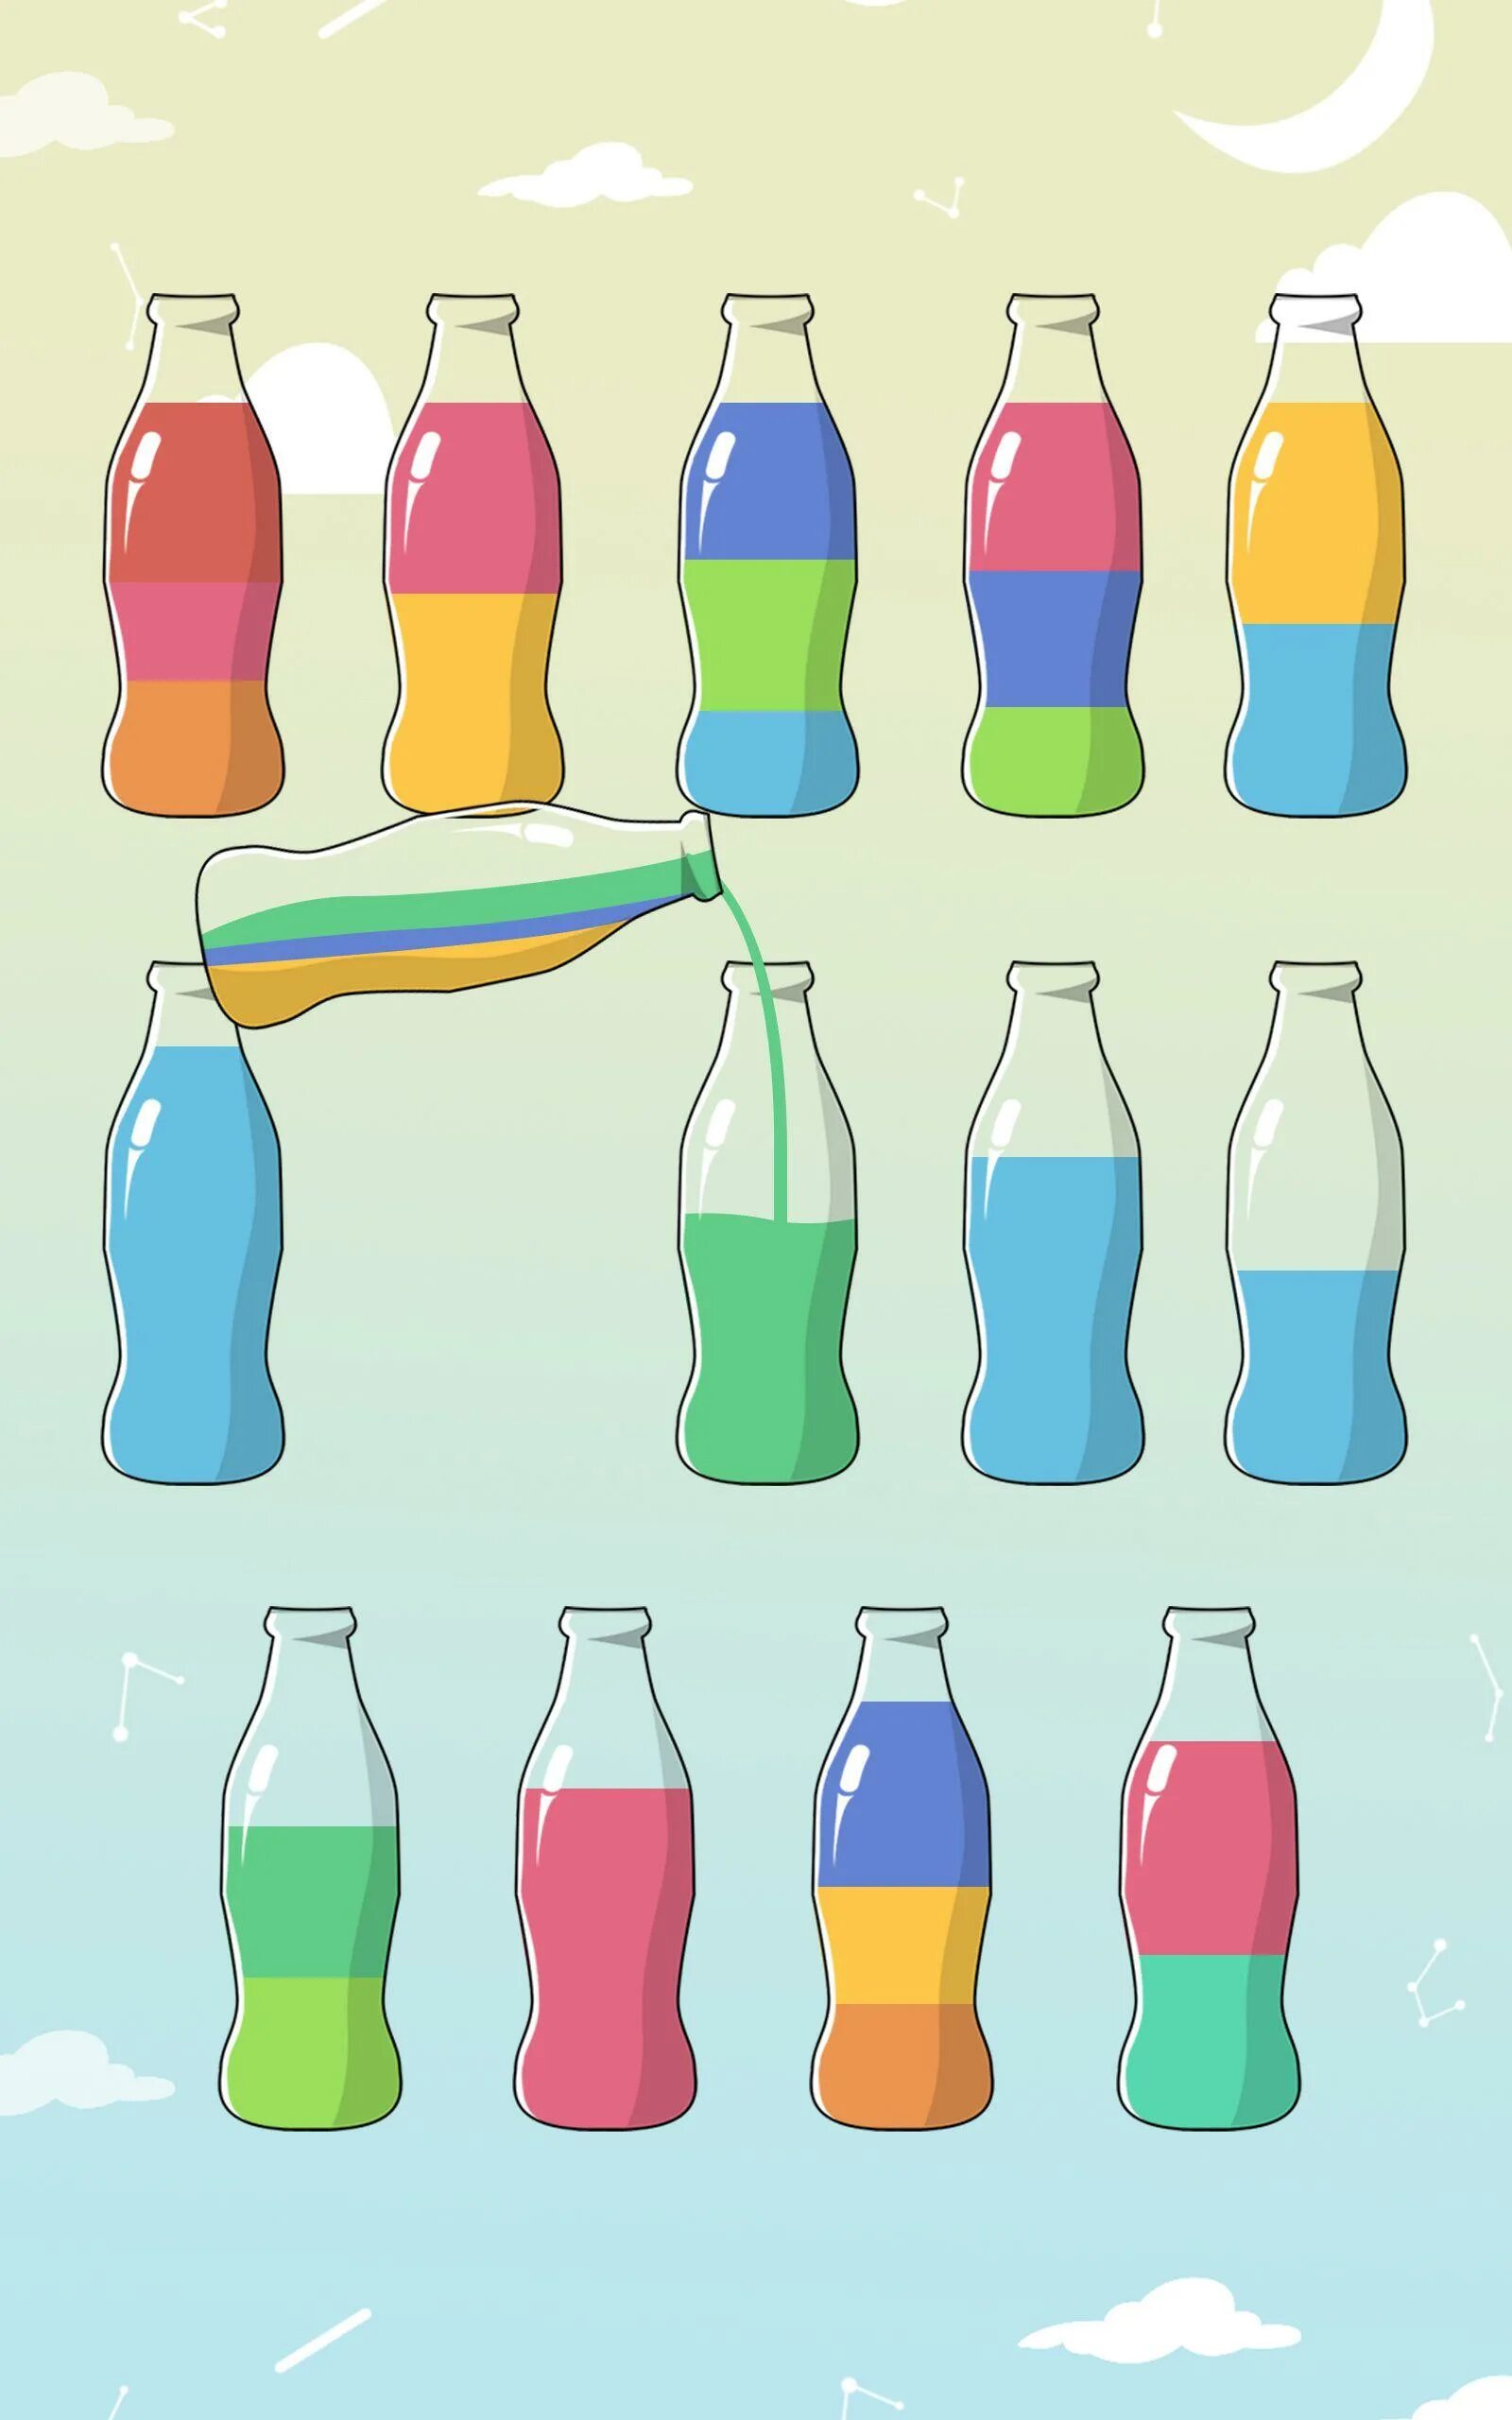 Игра бутылочки и пробирки. Игра в бутылочки с краской. Бутылочки с разноцветной жидкостью. Бутылочки для переливания. Игра бутылочки с разноцветной жидкостью.